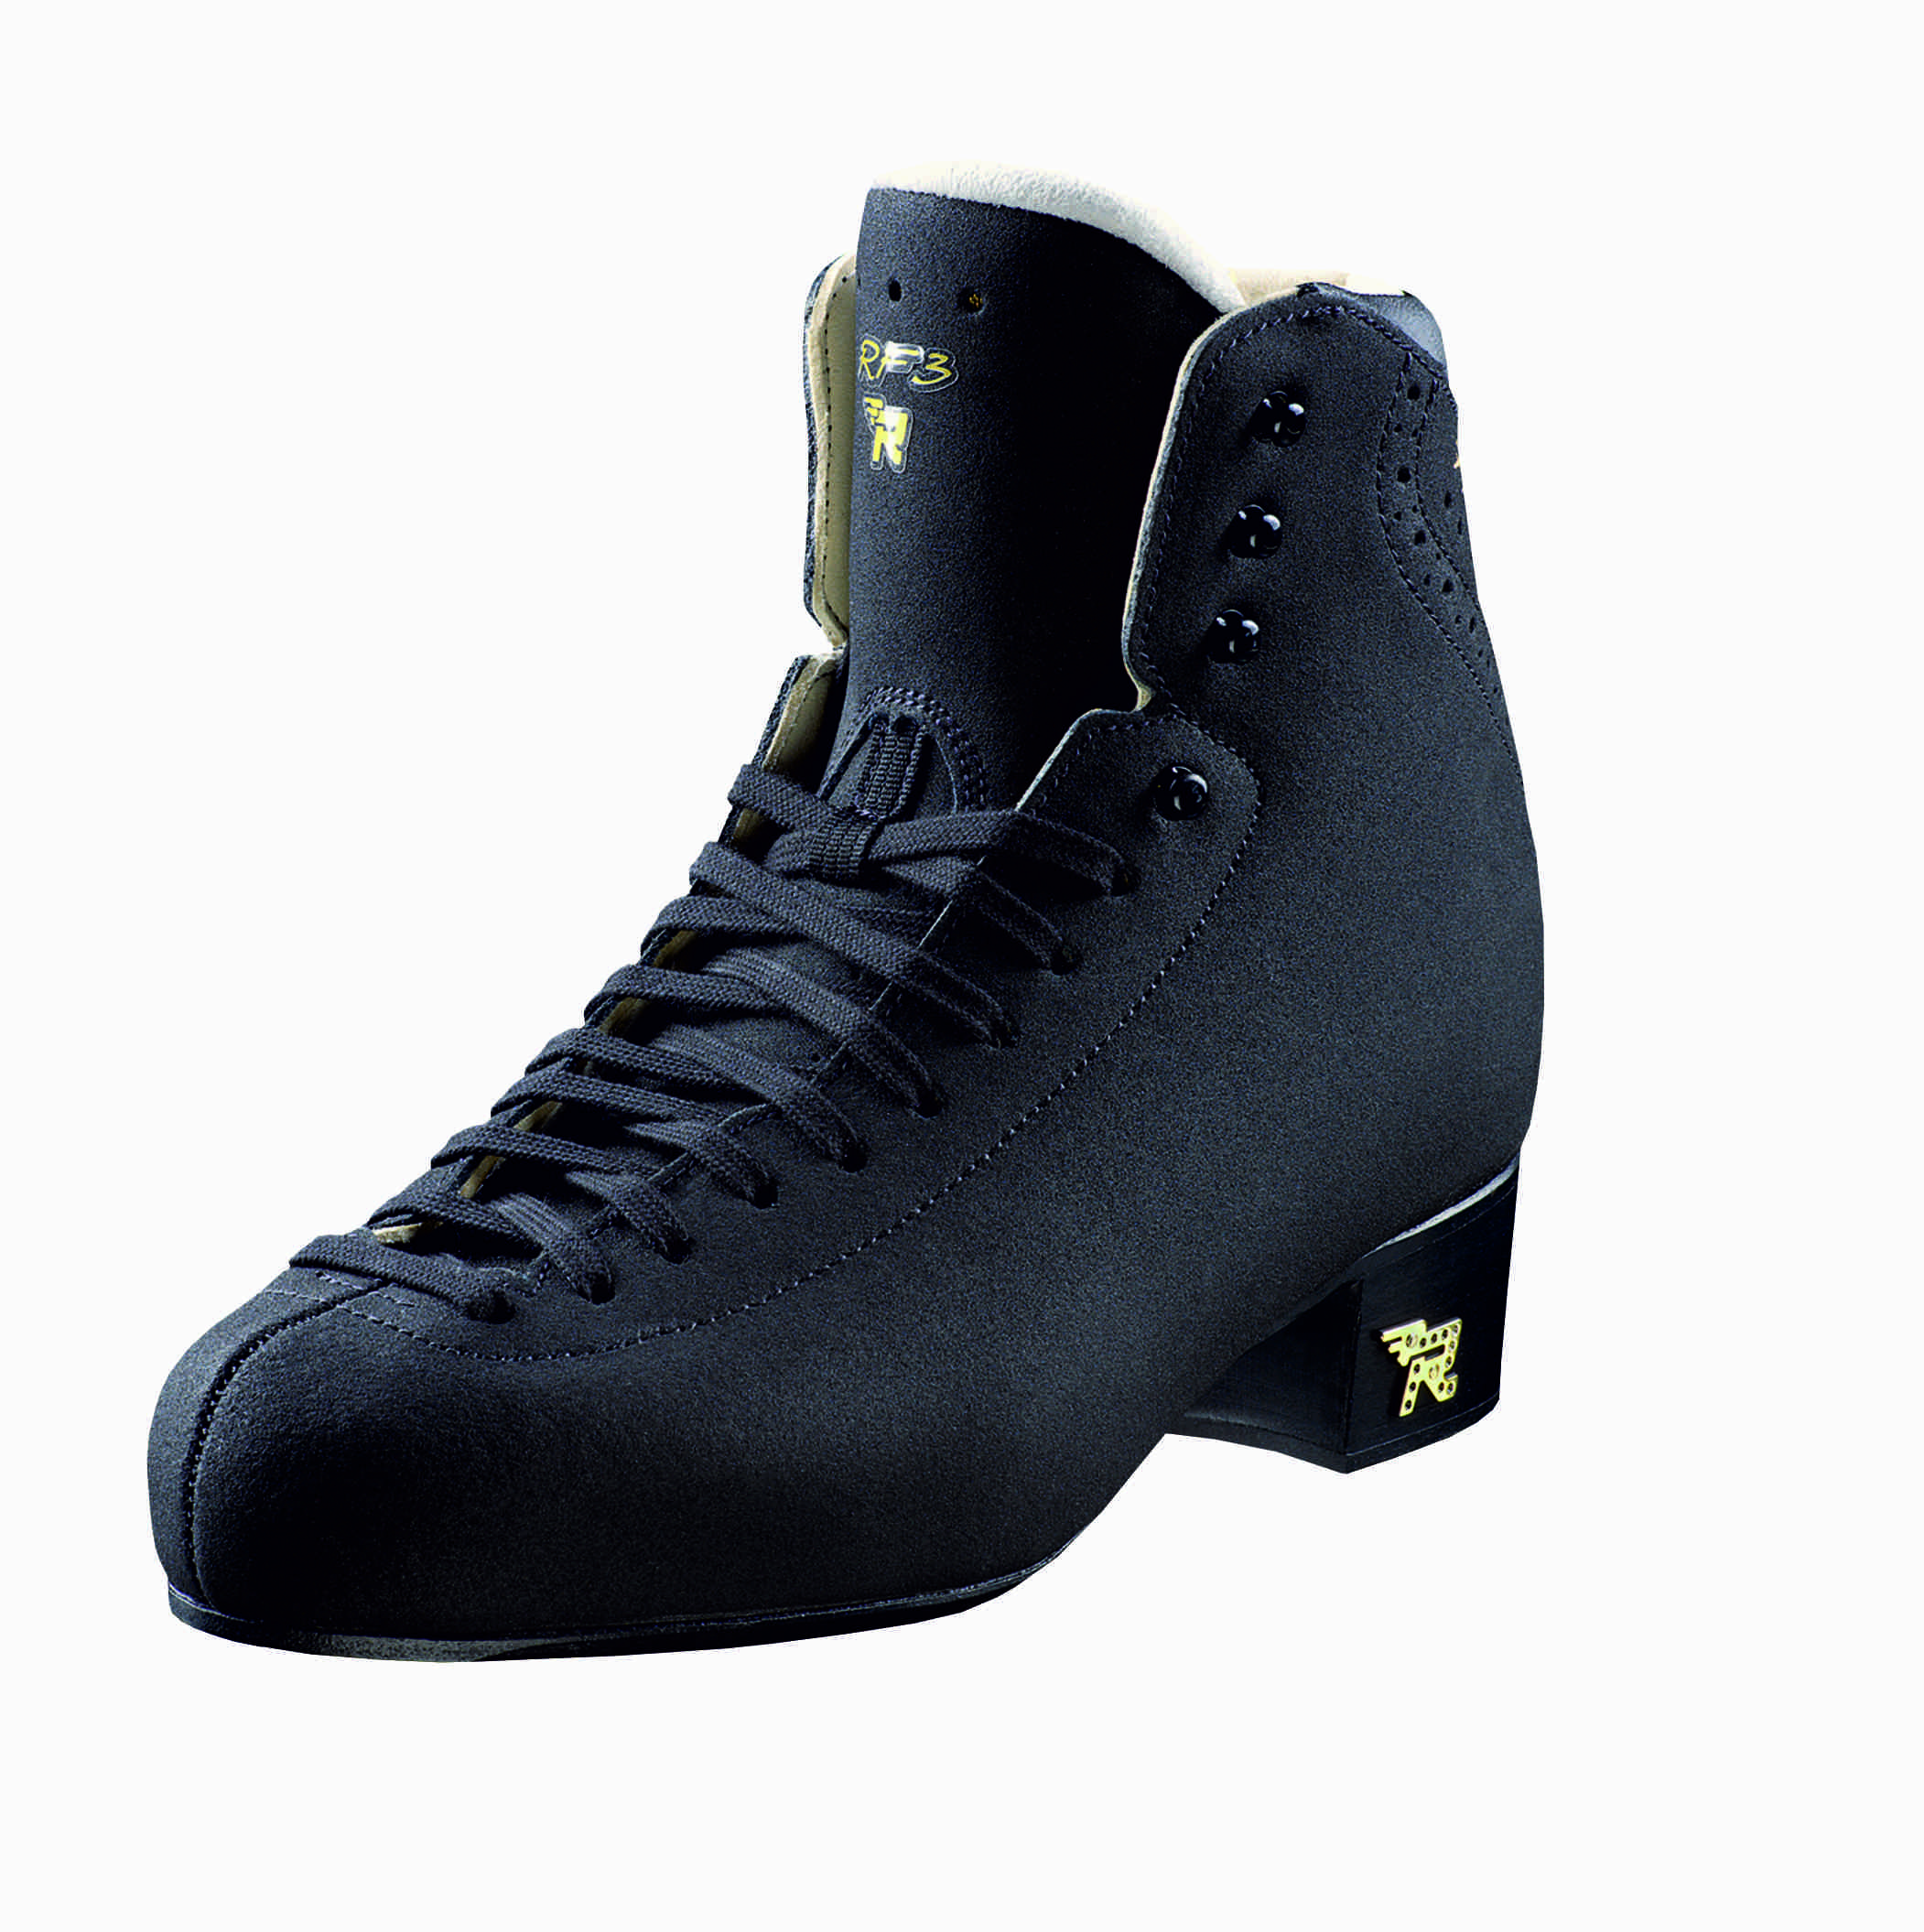 Фигурные ботинки Risport RF3 Pro (Черные), купить ботинки Risport в Москвеи Санкт-Петербурге по цене сети магазинов Фигурист